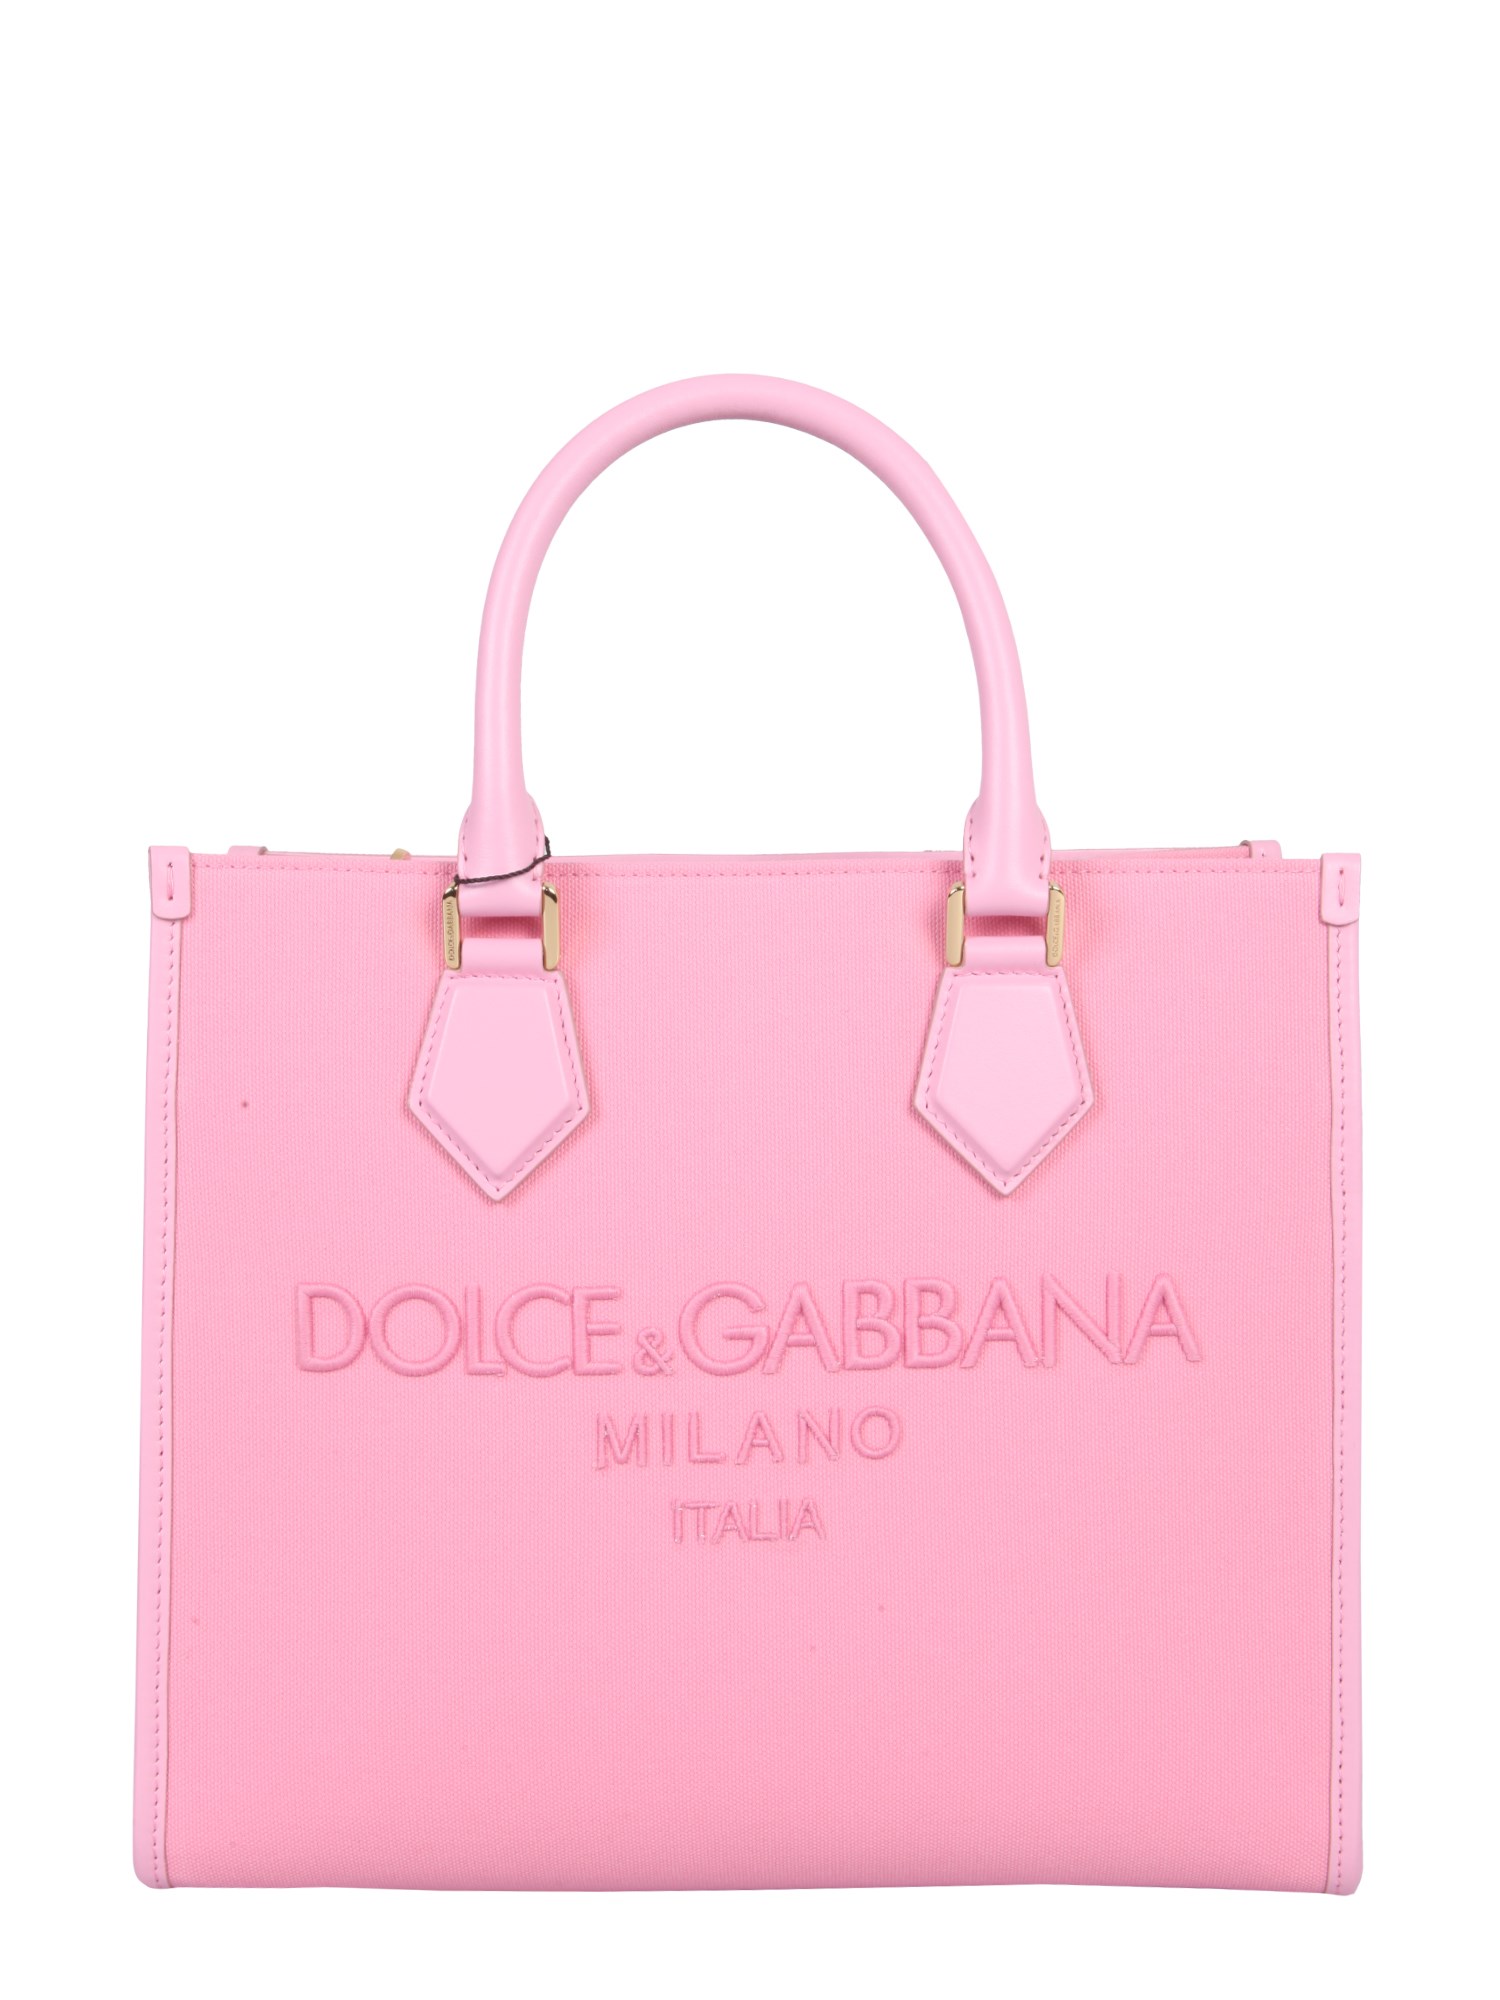 dolce & gabbana canvas shopping bag